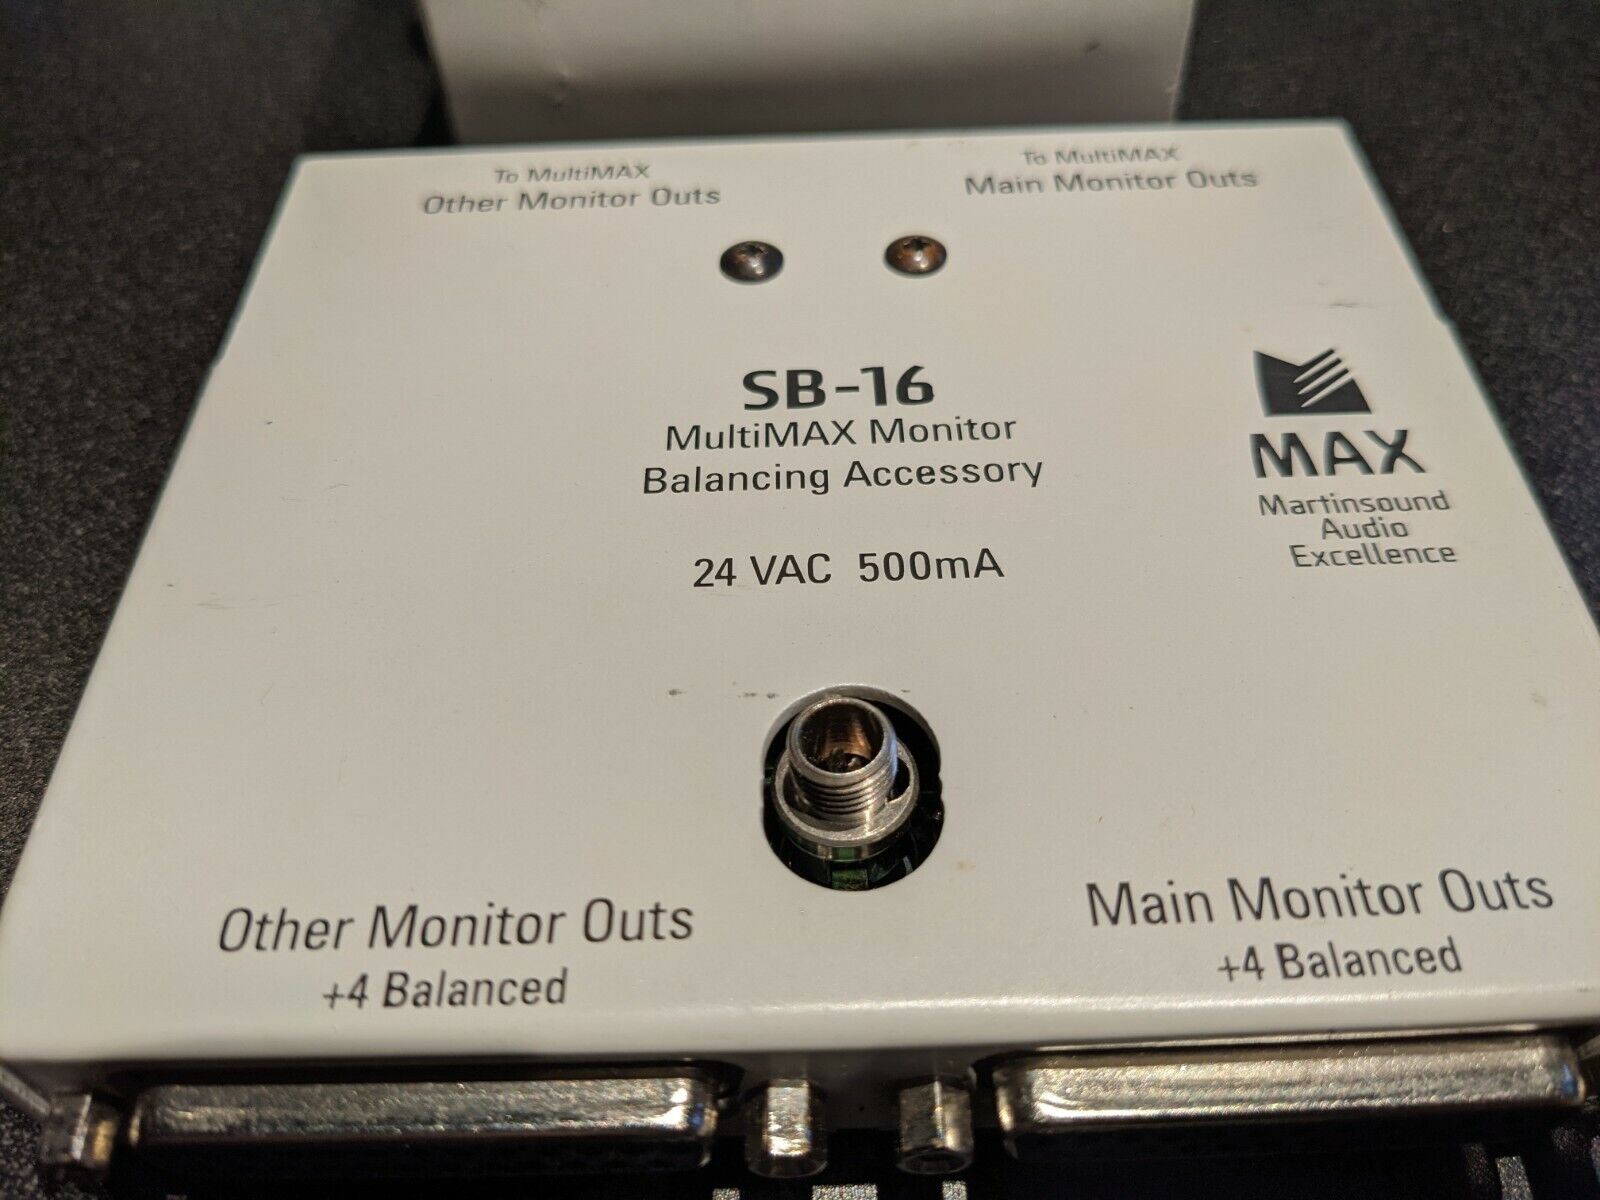 Martin Sound - Multi-Max SM-16 Monitor Balancing Accessory